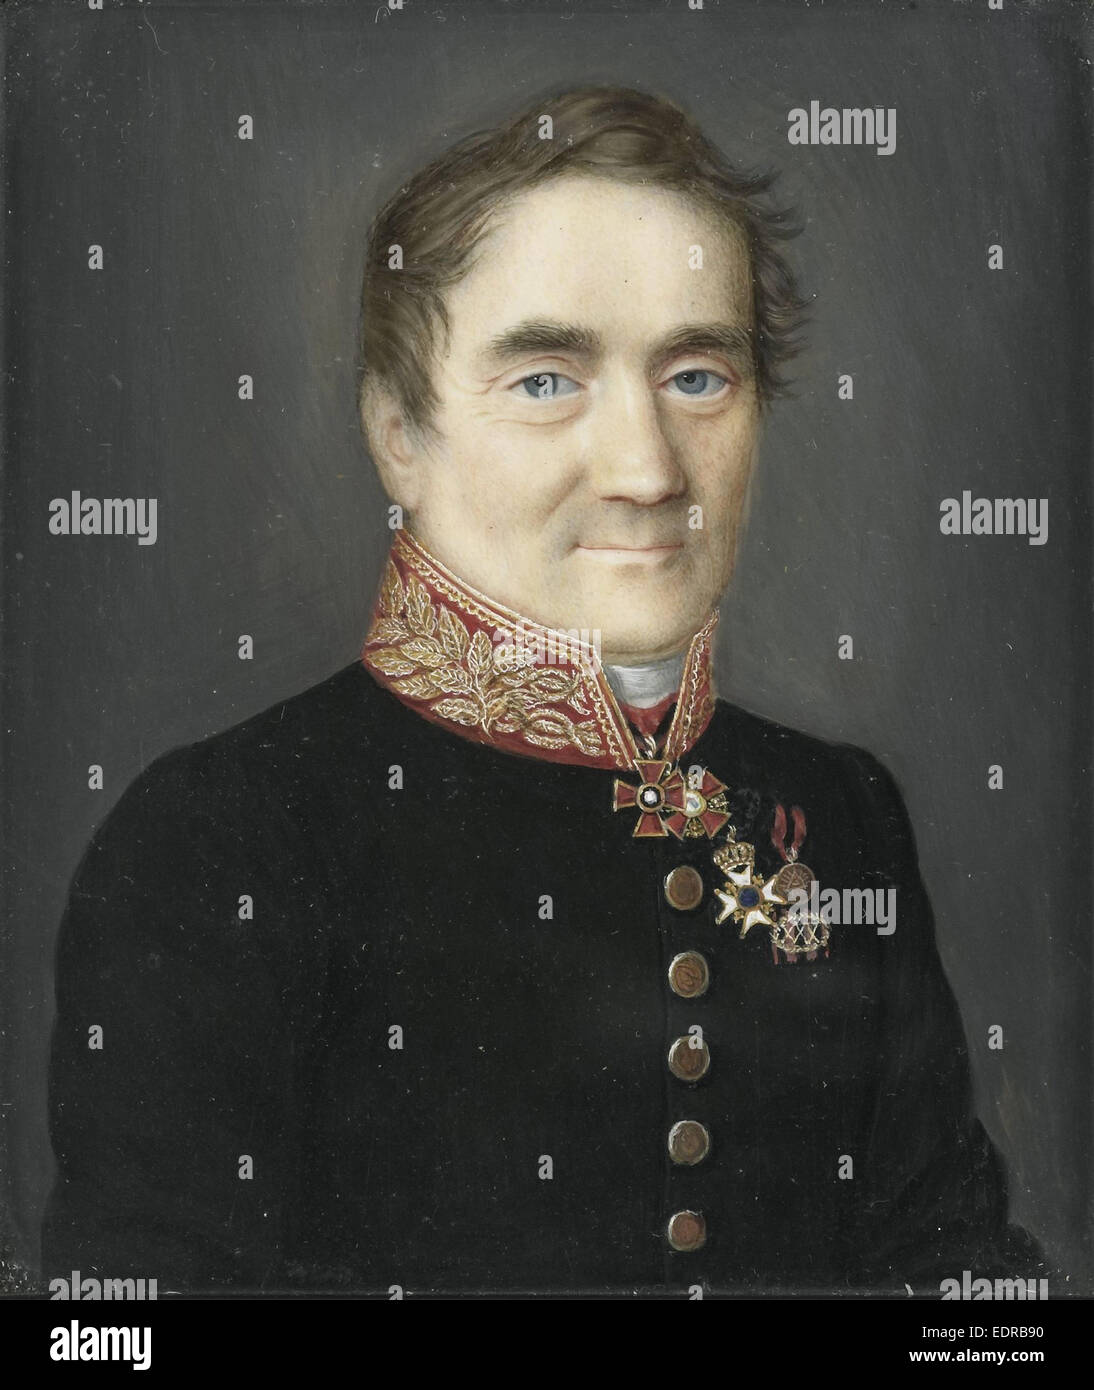 J C de Brunett. Generalkonsul der Russischen Föderation in Amsterdam, anonym, c. 1850 Stockfoto